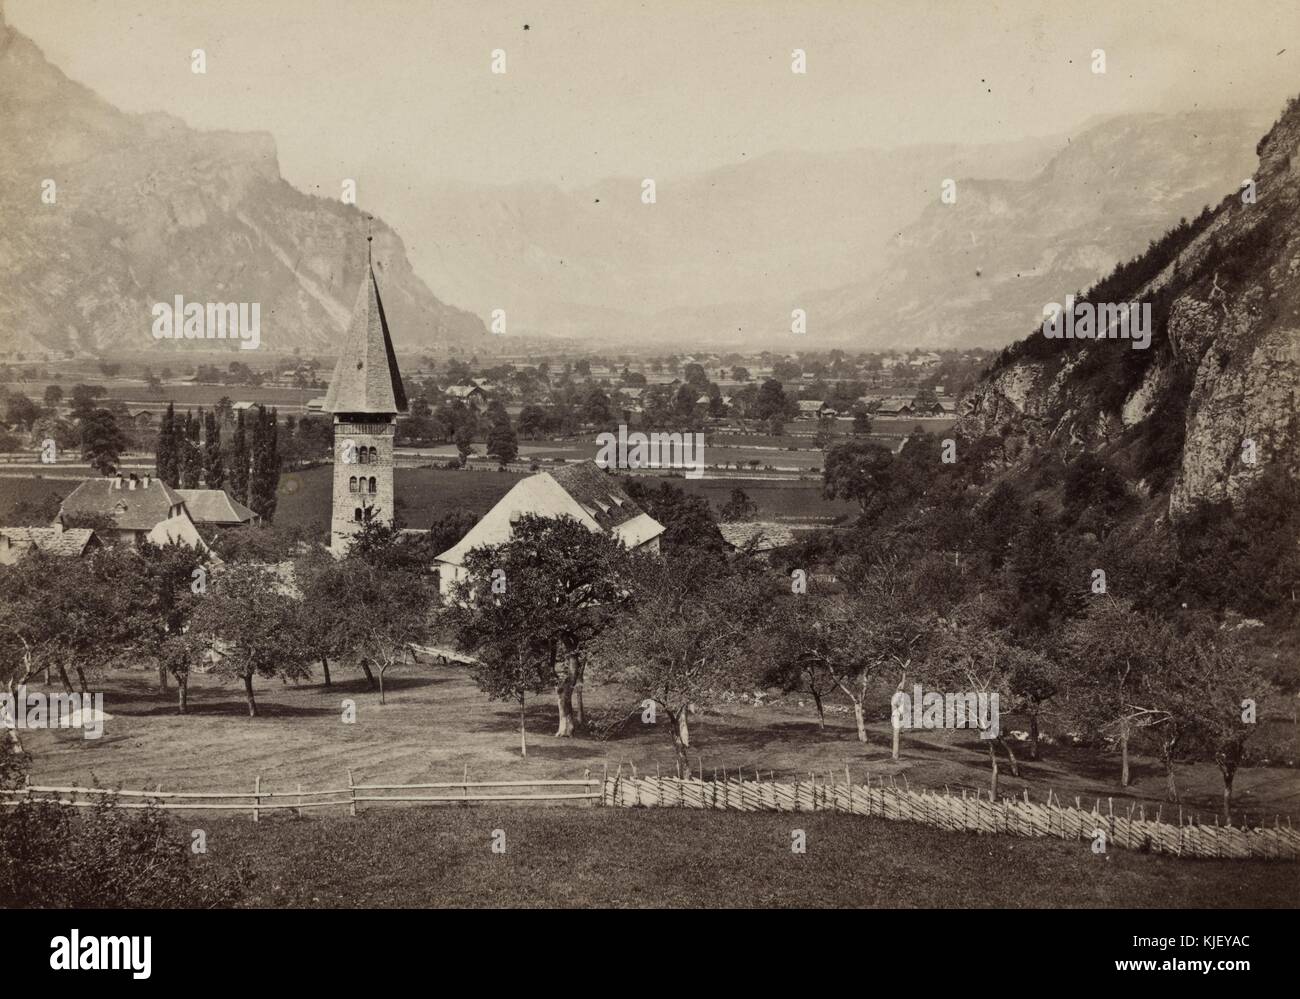 Ein Foto der Stadt Meringen von einer Höhe über der Stadt auf einem Hügel, die Stadt ist in einem Tal, umgeben von hohen Bergen, zu sehen, der Turm einer Kirche im Vordergrund zusammen mit mehreren anderen ein- und zweistöckigen Gebäuden, Schweiz, 1865. Aus der New York Public Library. Stockfoto